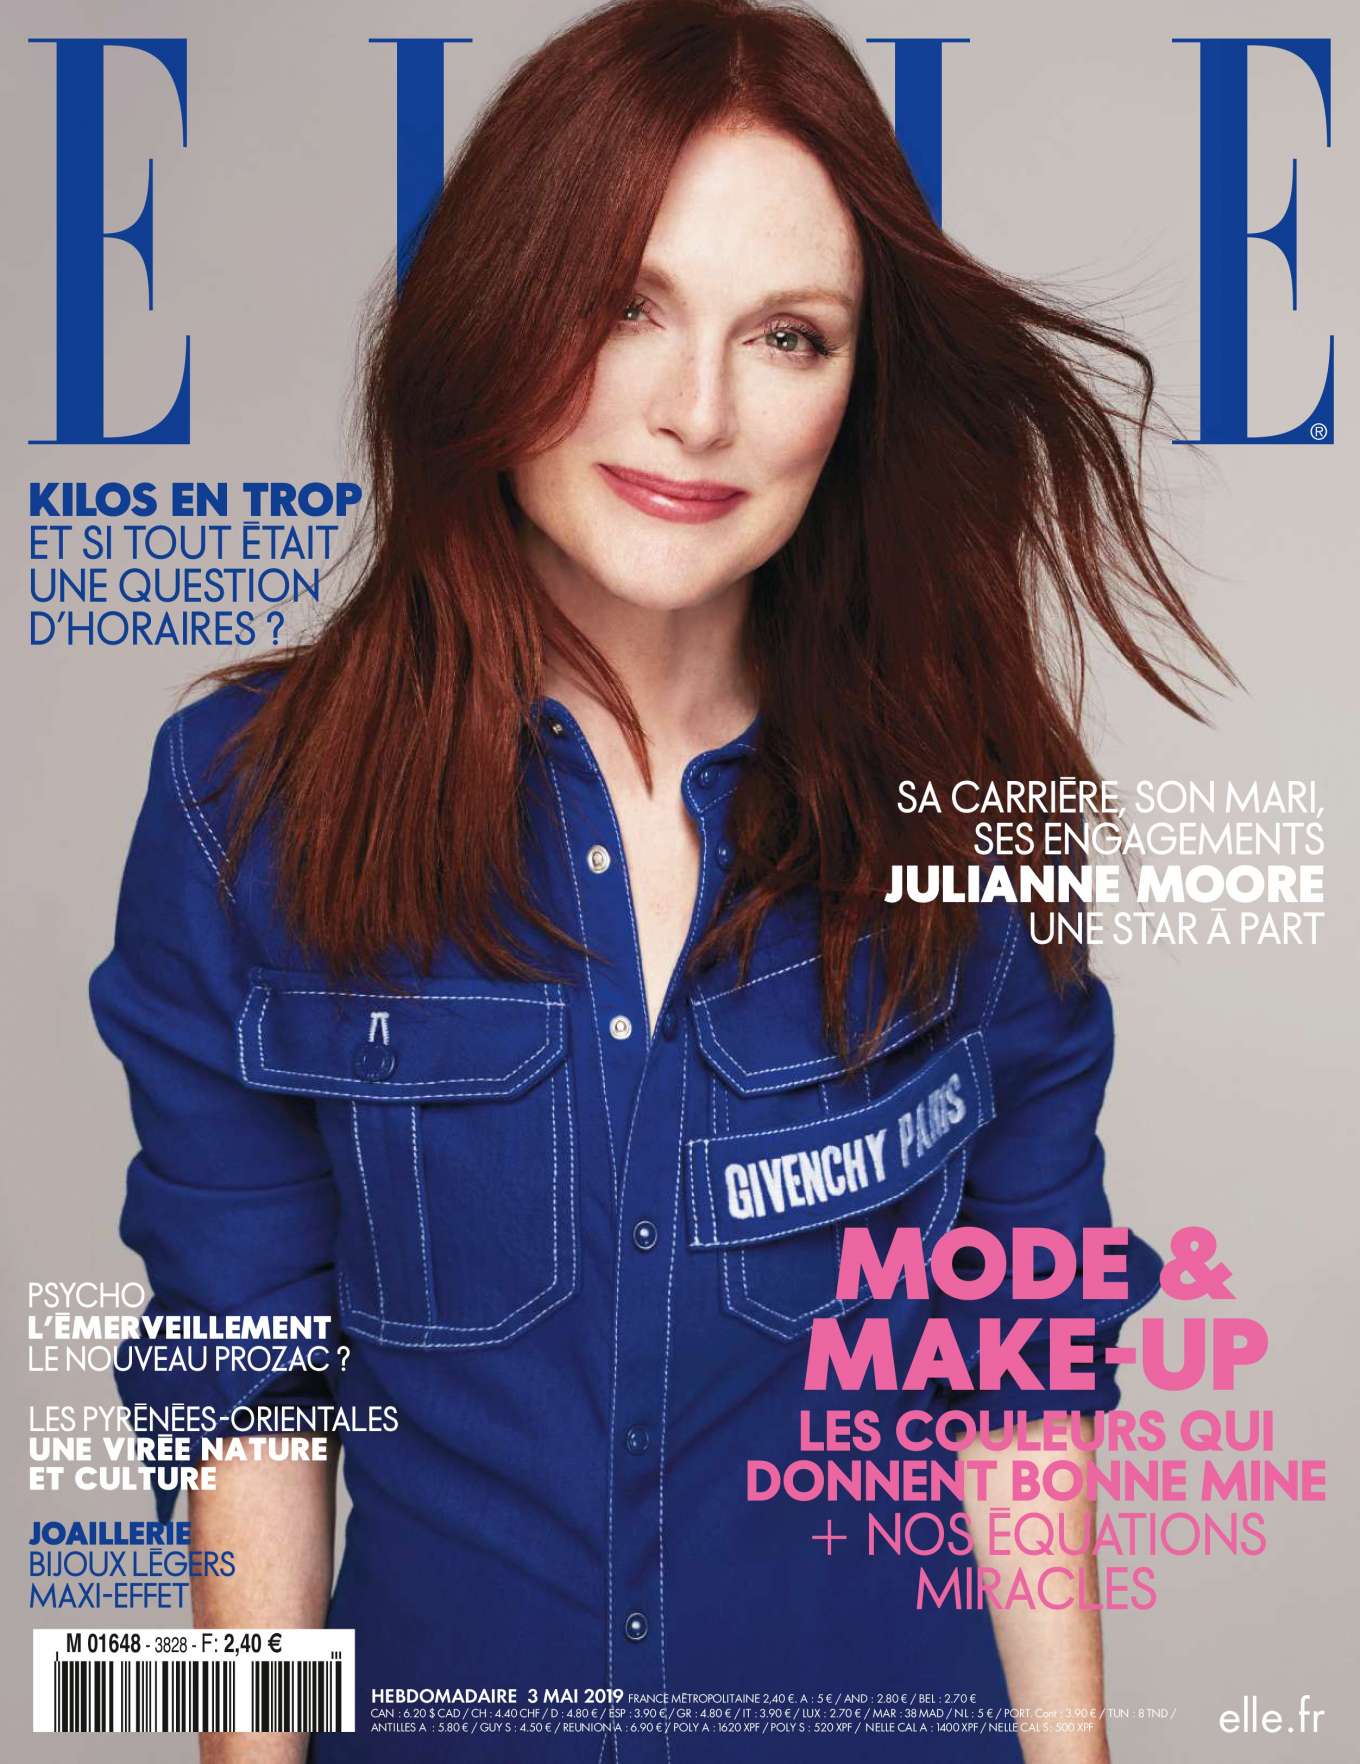 Julianne Moore 2019 : Julianne Moore: Elle France 2019 -01